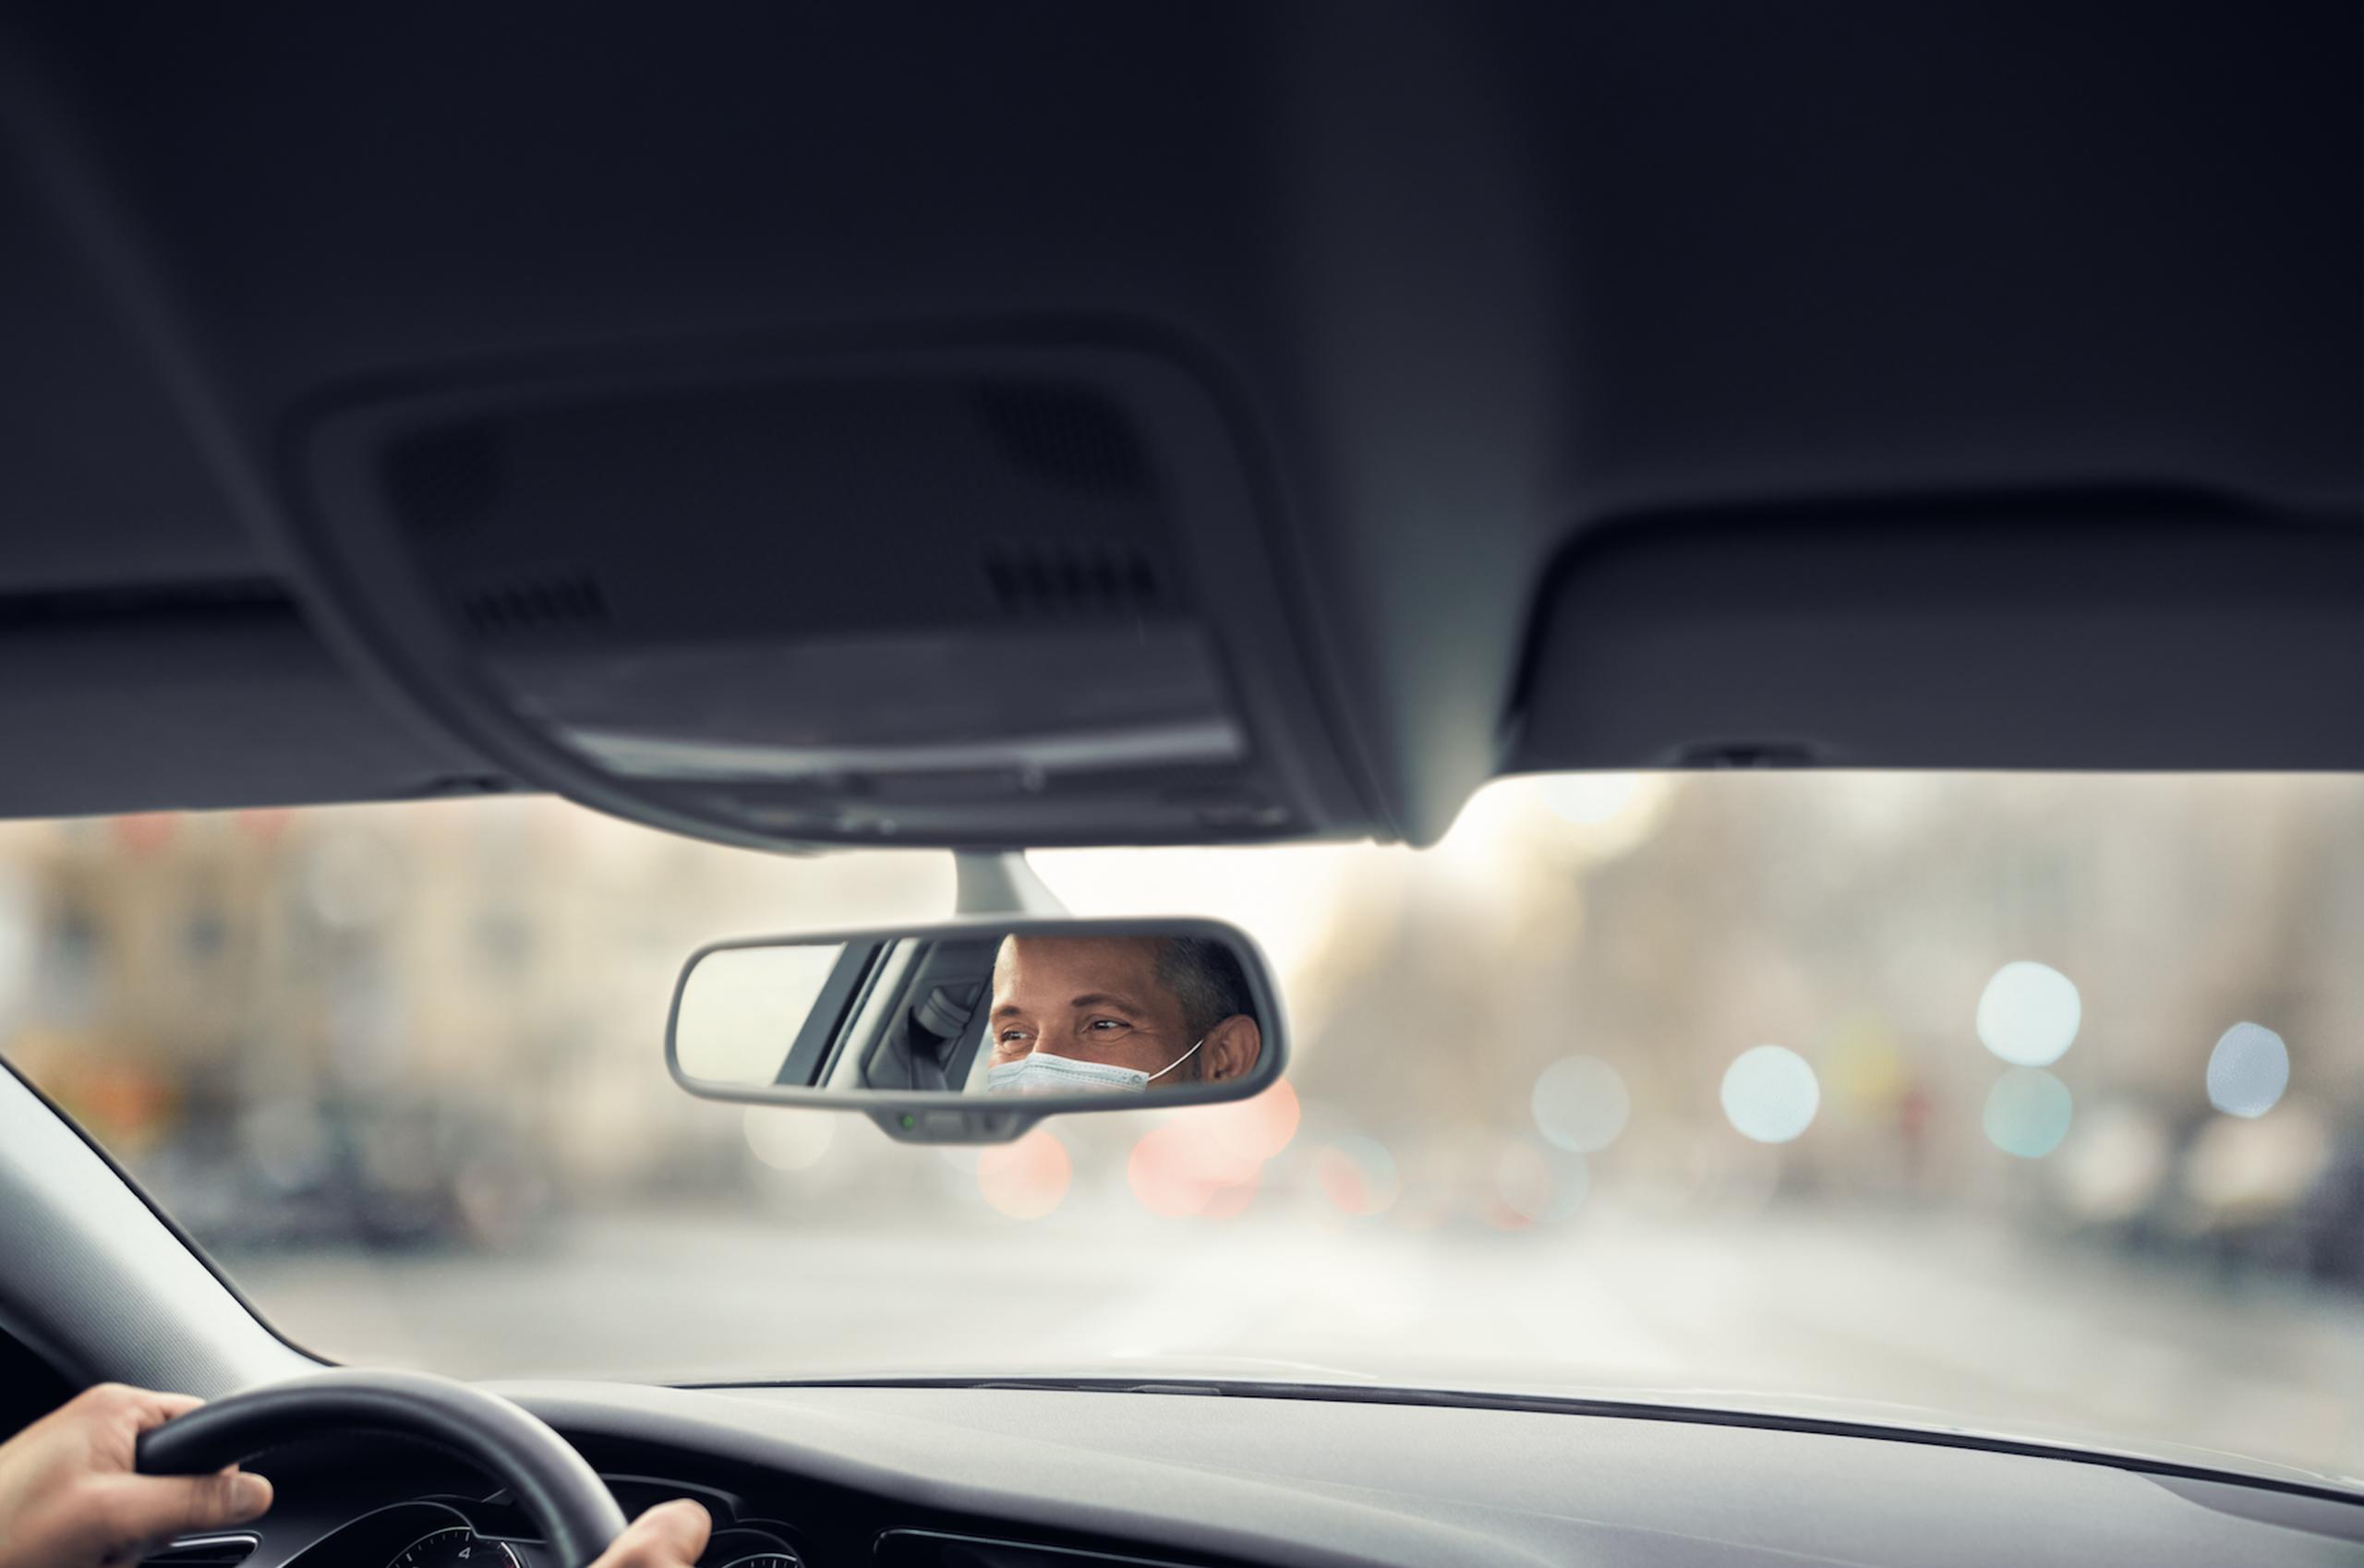 Uber Taxi cuenta con protocolos y recomendaciones centrados en optimizar la seguridad y salud de los taxistas y usuarios, lo que incluye tecnología de verificación de uso de mascarillas a través de una selfie.